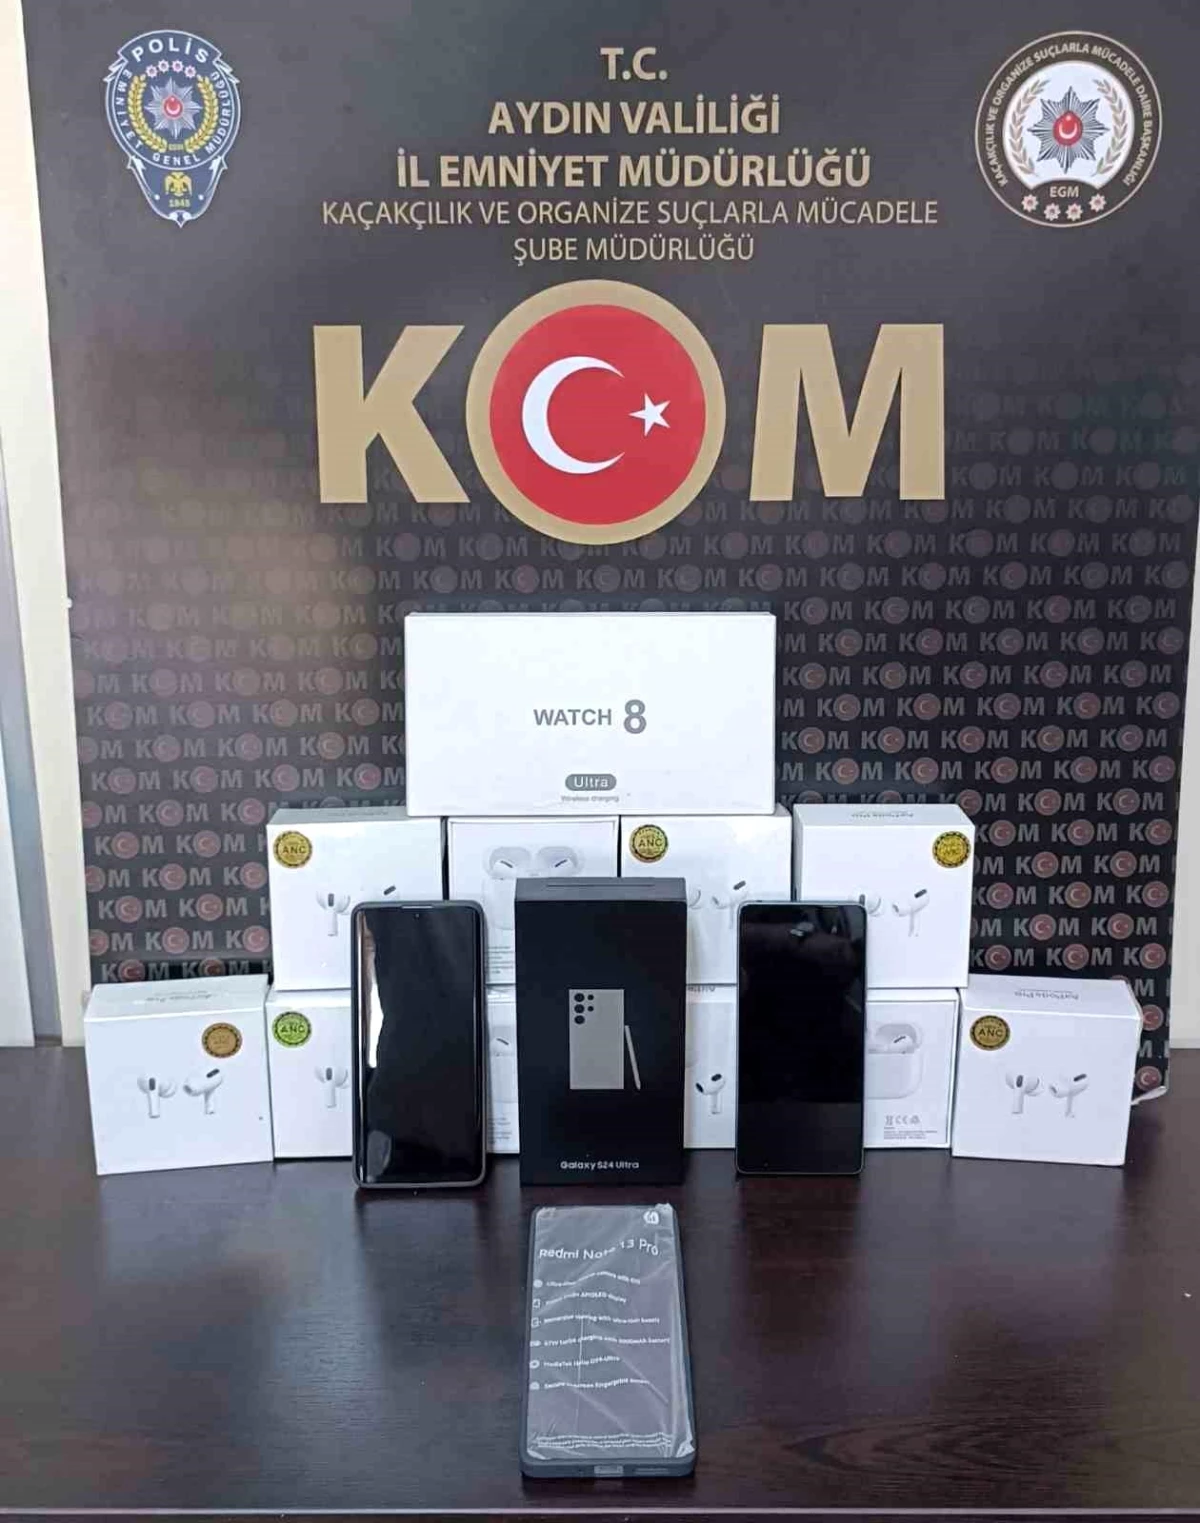 Aydın'da Kaçakçılık Operasyonu: 200 Bin TL Değerinde Cep Telefonu ve Akıllı Saat Ele Geçirildi